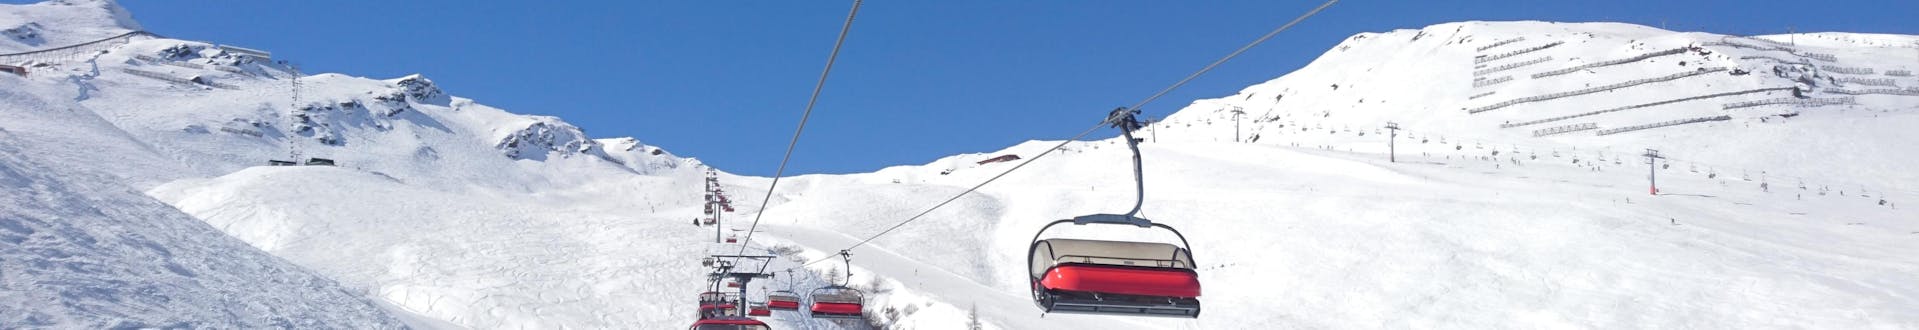 Téléski sur les pistes de Götzens - Muttereralm, où vous pouvez réserver des leçons de ski.